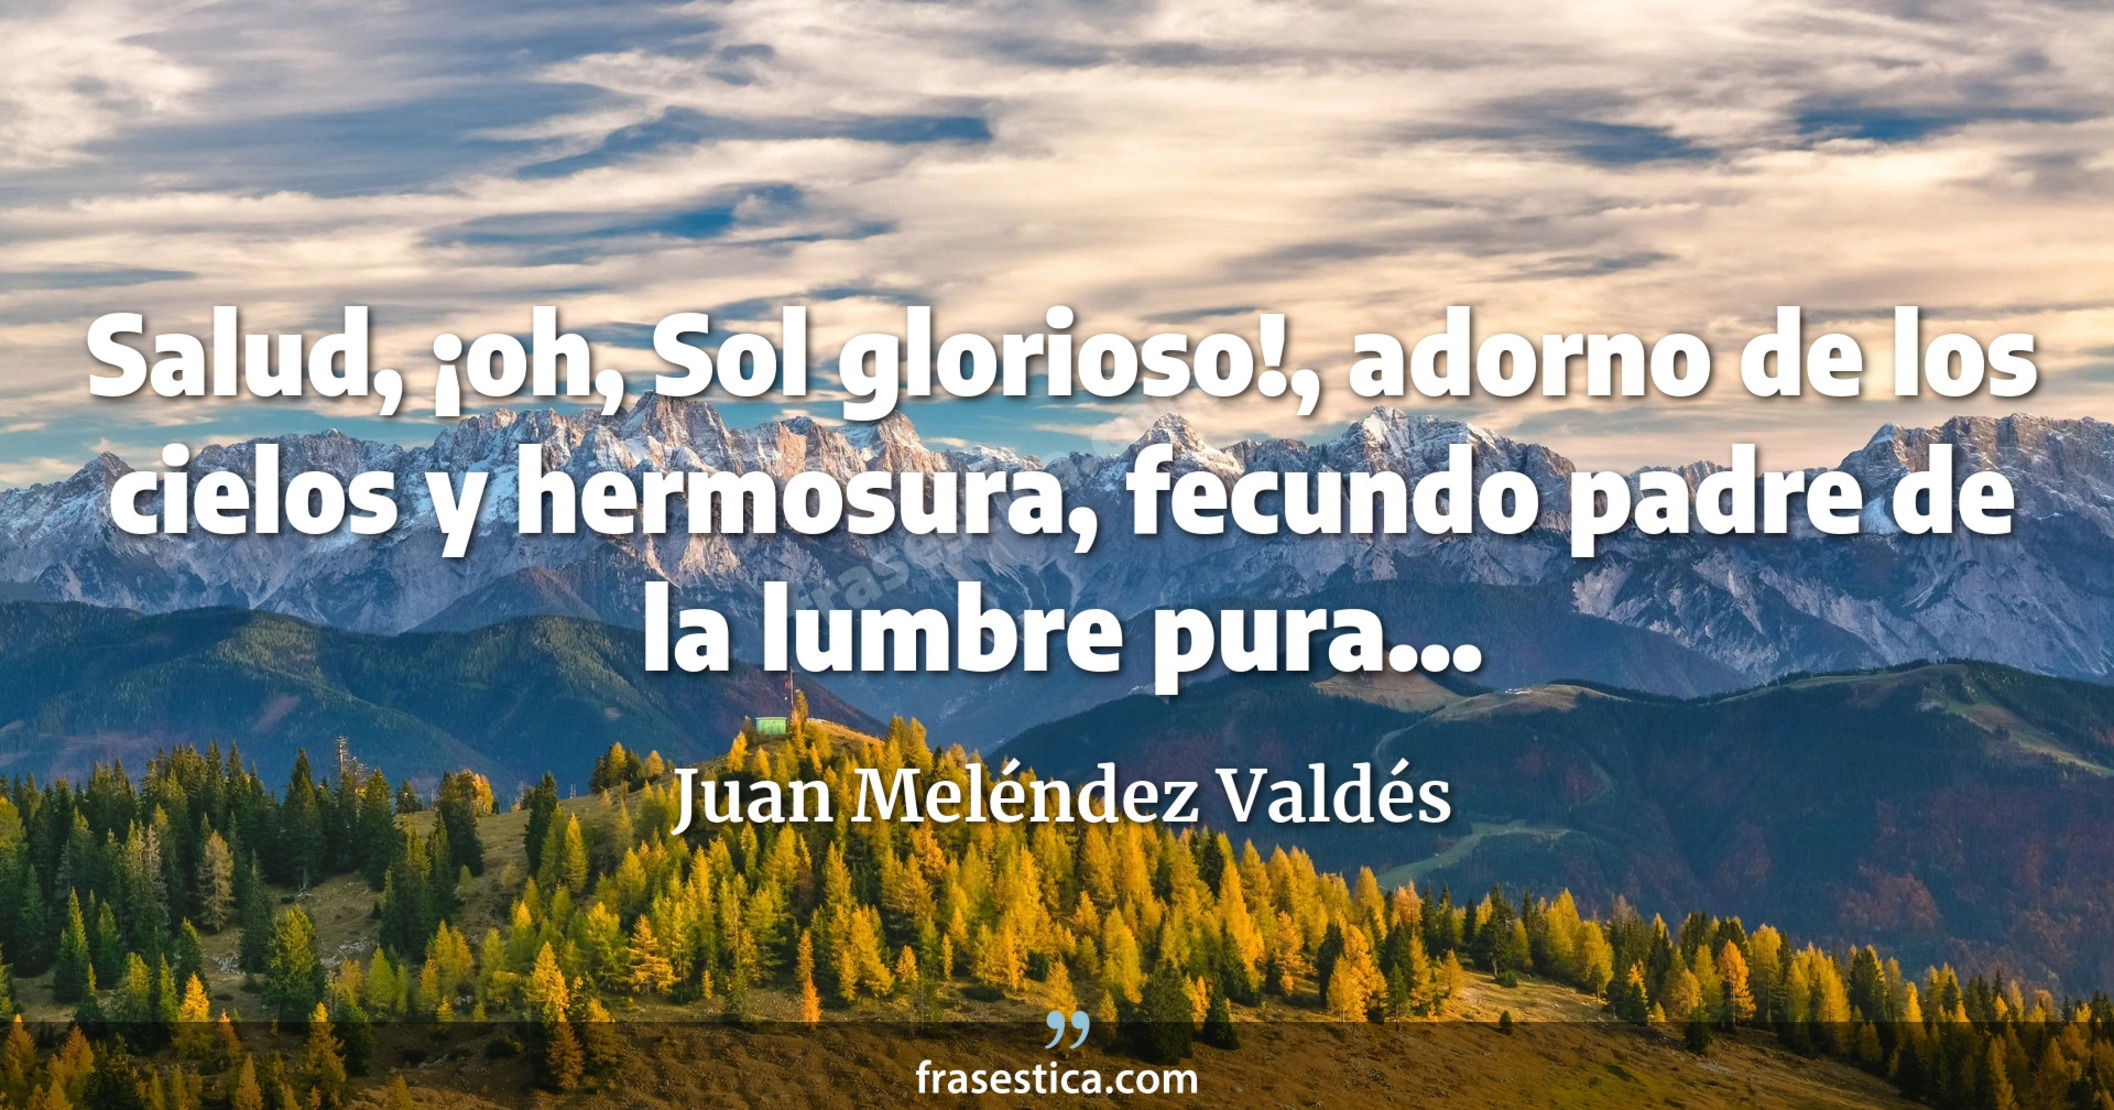 Salud, ¡oh, Sol glorioso!, adorno de los cielos y hermosura, fecundo padre de la lumbre pura... - Juan Meléndez Valdés